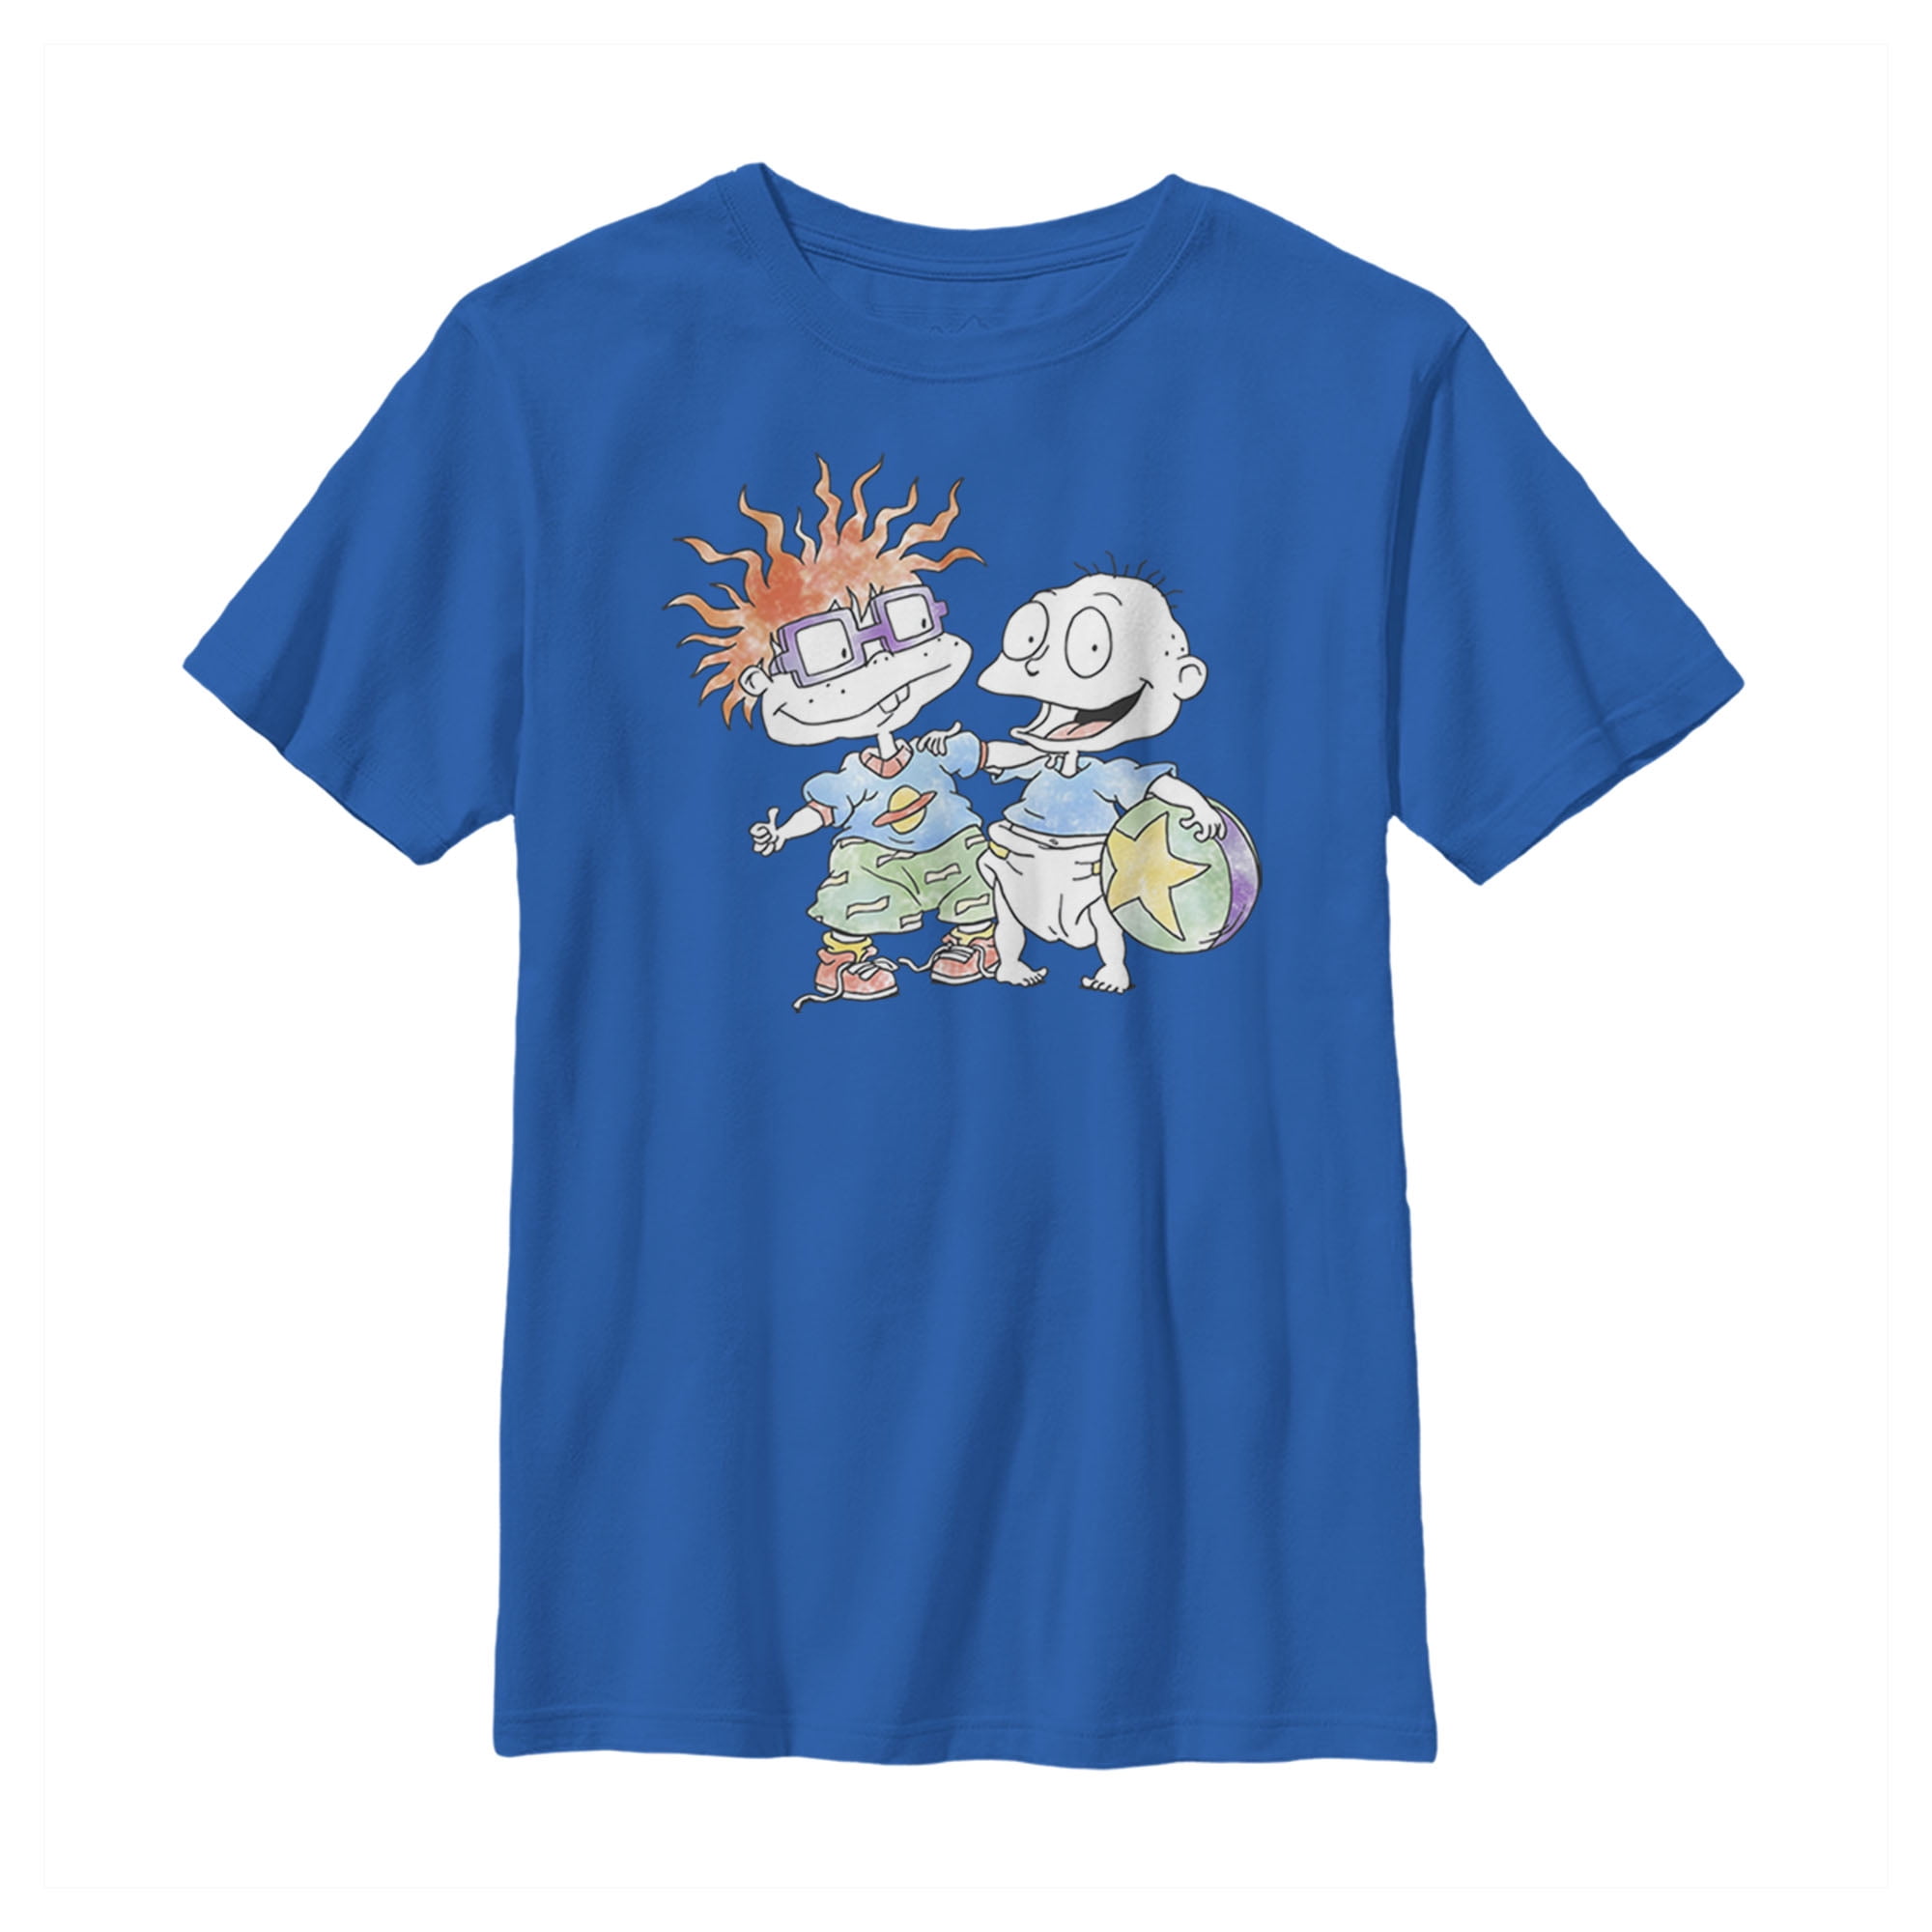 Cartoon Shirt Rugrats Friends shirt Tommy Angelica Chuckie Rugrats RugRats Rugrat Shirt